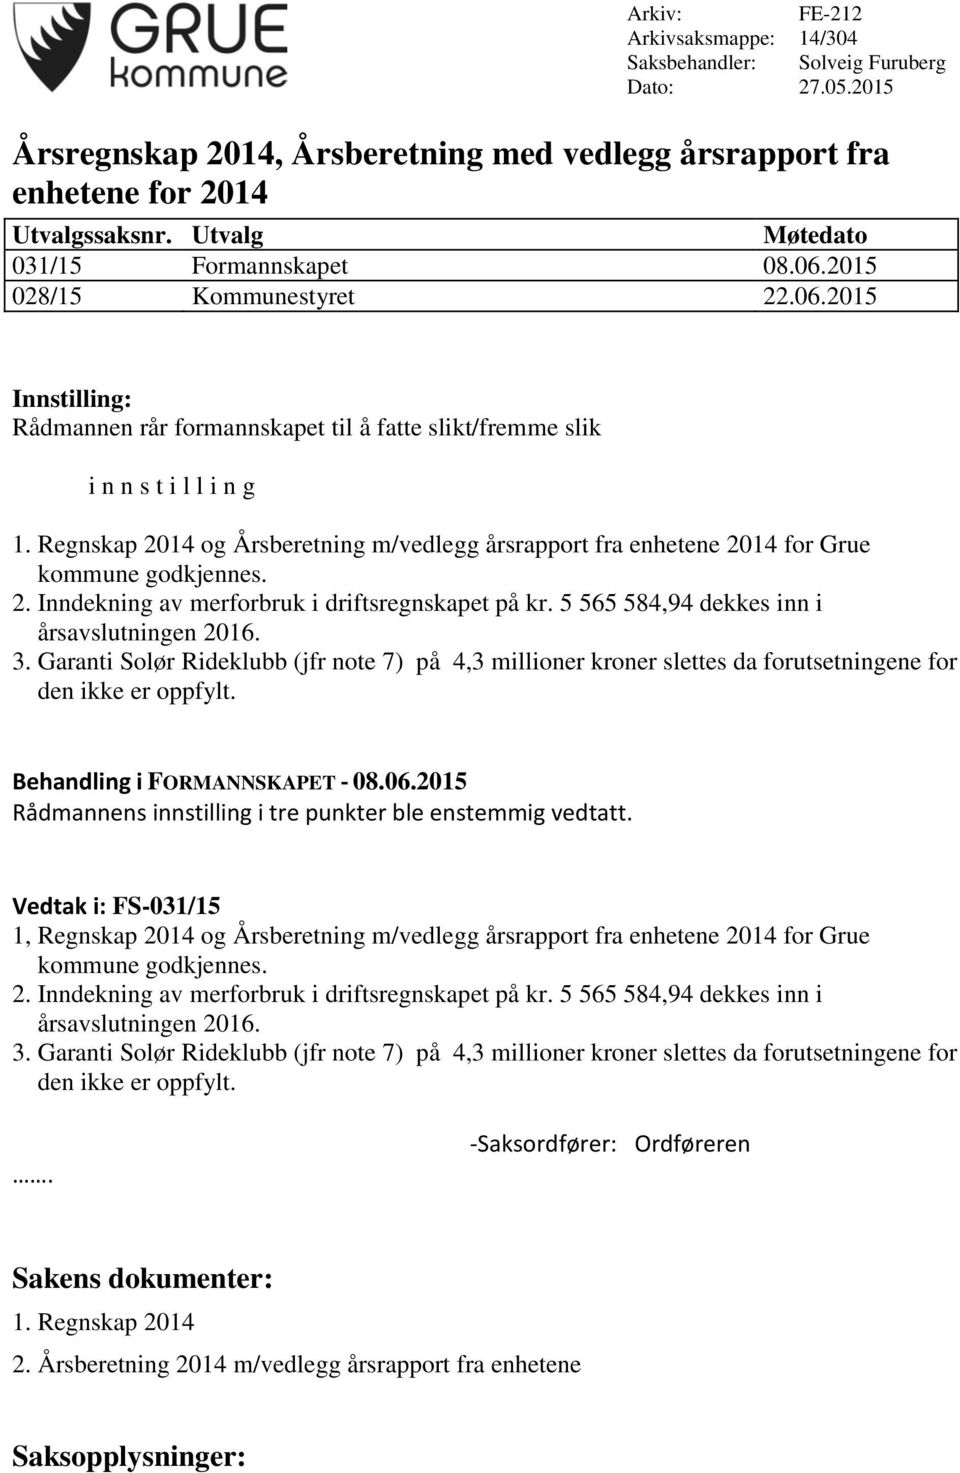 Regnskap 2014 og Årsberetning m/vedlegg årsrapport fra enhetene 2014 for Grue kommune godkjennes. 2. Inndekning av merforbruk i driftsregnskapet på kr. 5 565 584,94 dekkes inn i årsavslutningen 2016.